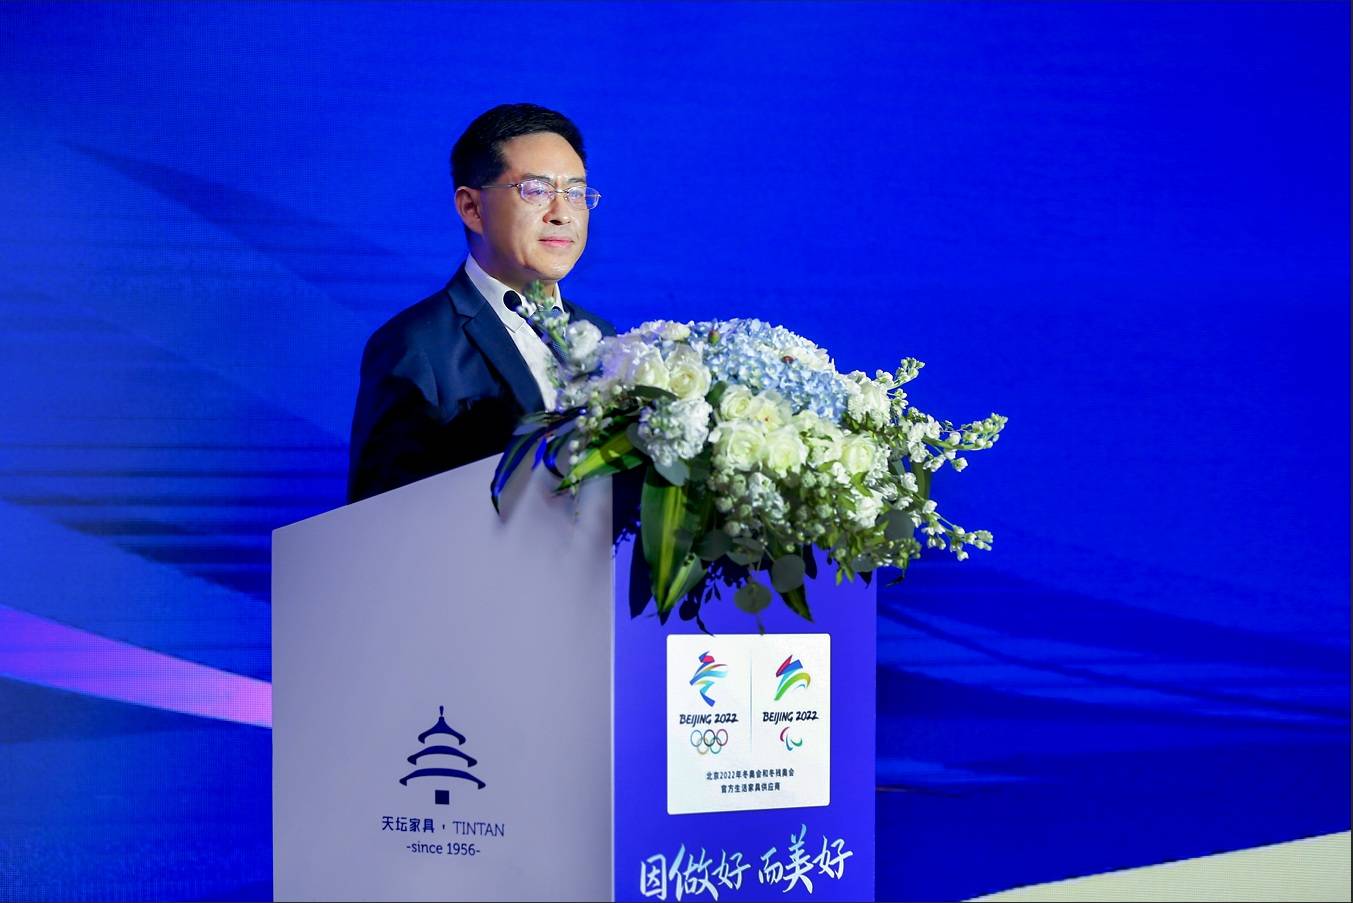 天坛家具成为北京2022年冬奥会和冬残奥会官方生活家具供应商